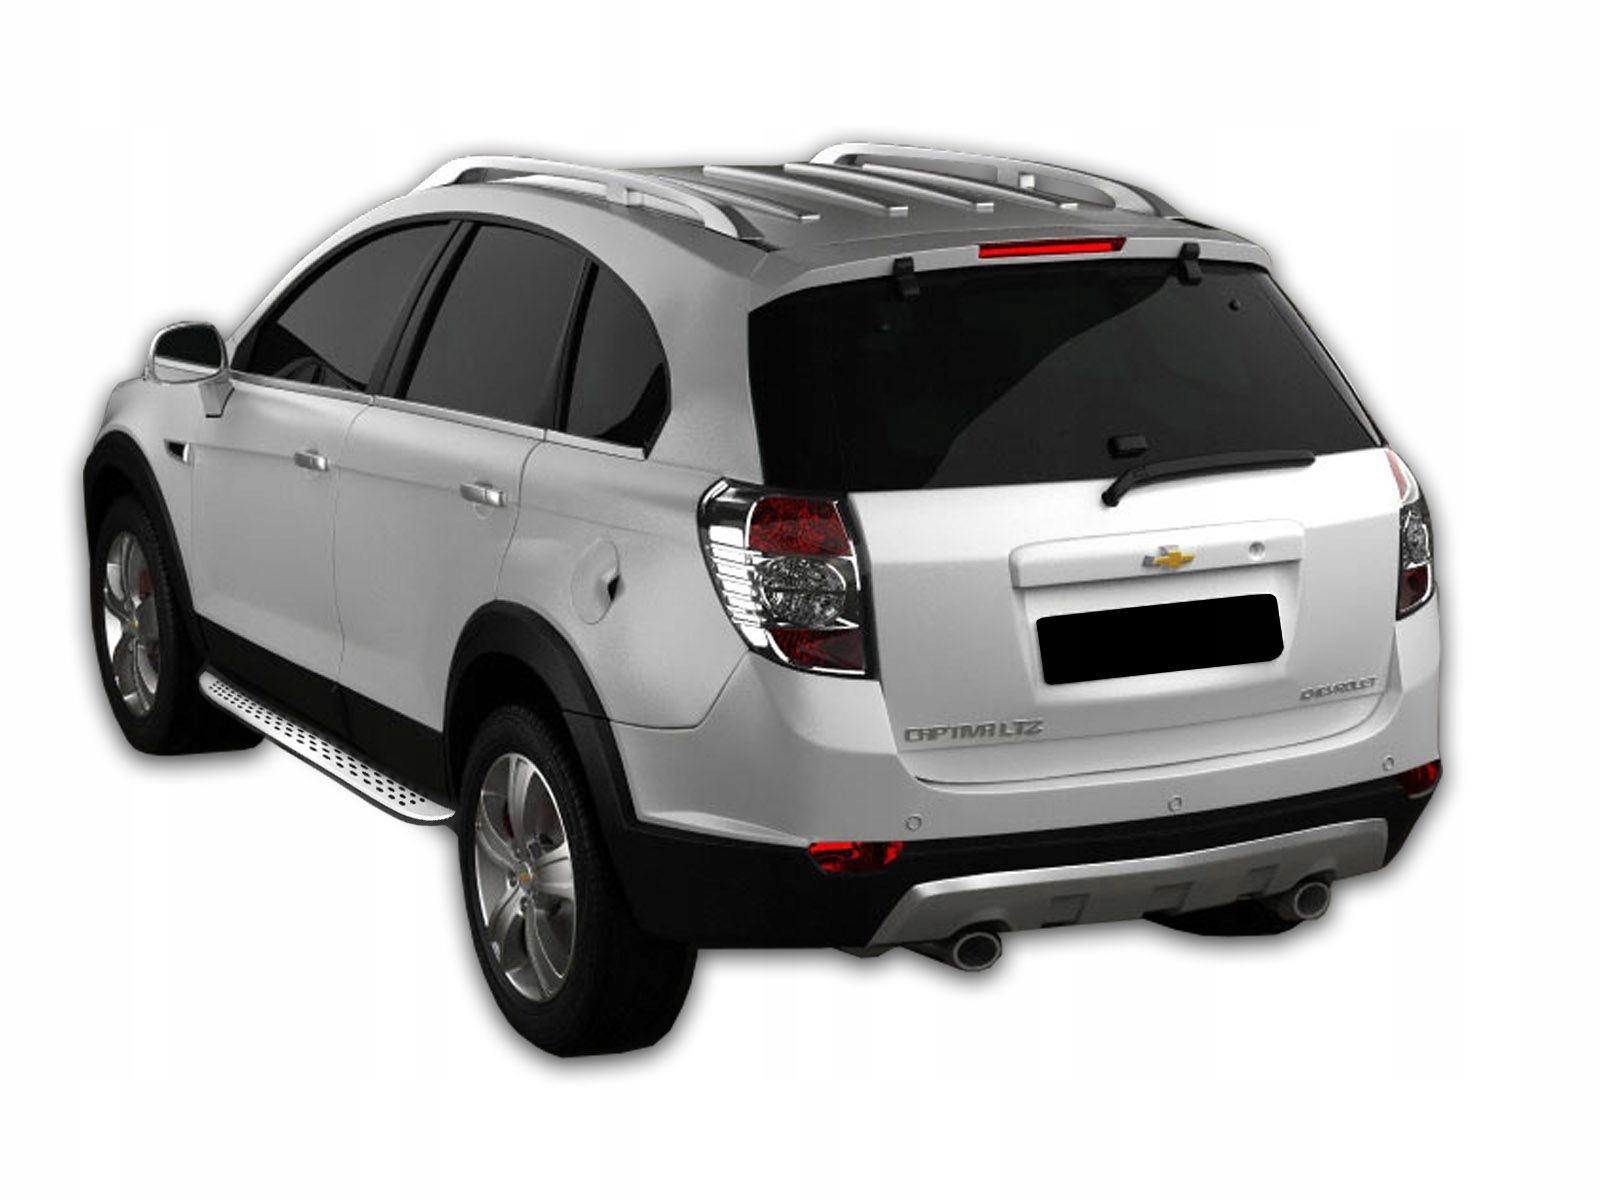 Chevrolet Captiva 2012-18 Stopnie Боковое | All-Pl №1 | Доставка Запчастей Из Польши В Украину Под Заказ